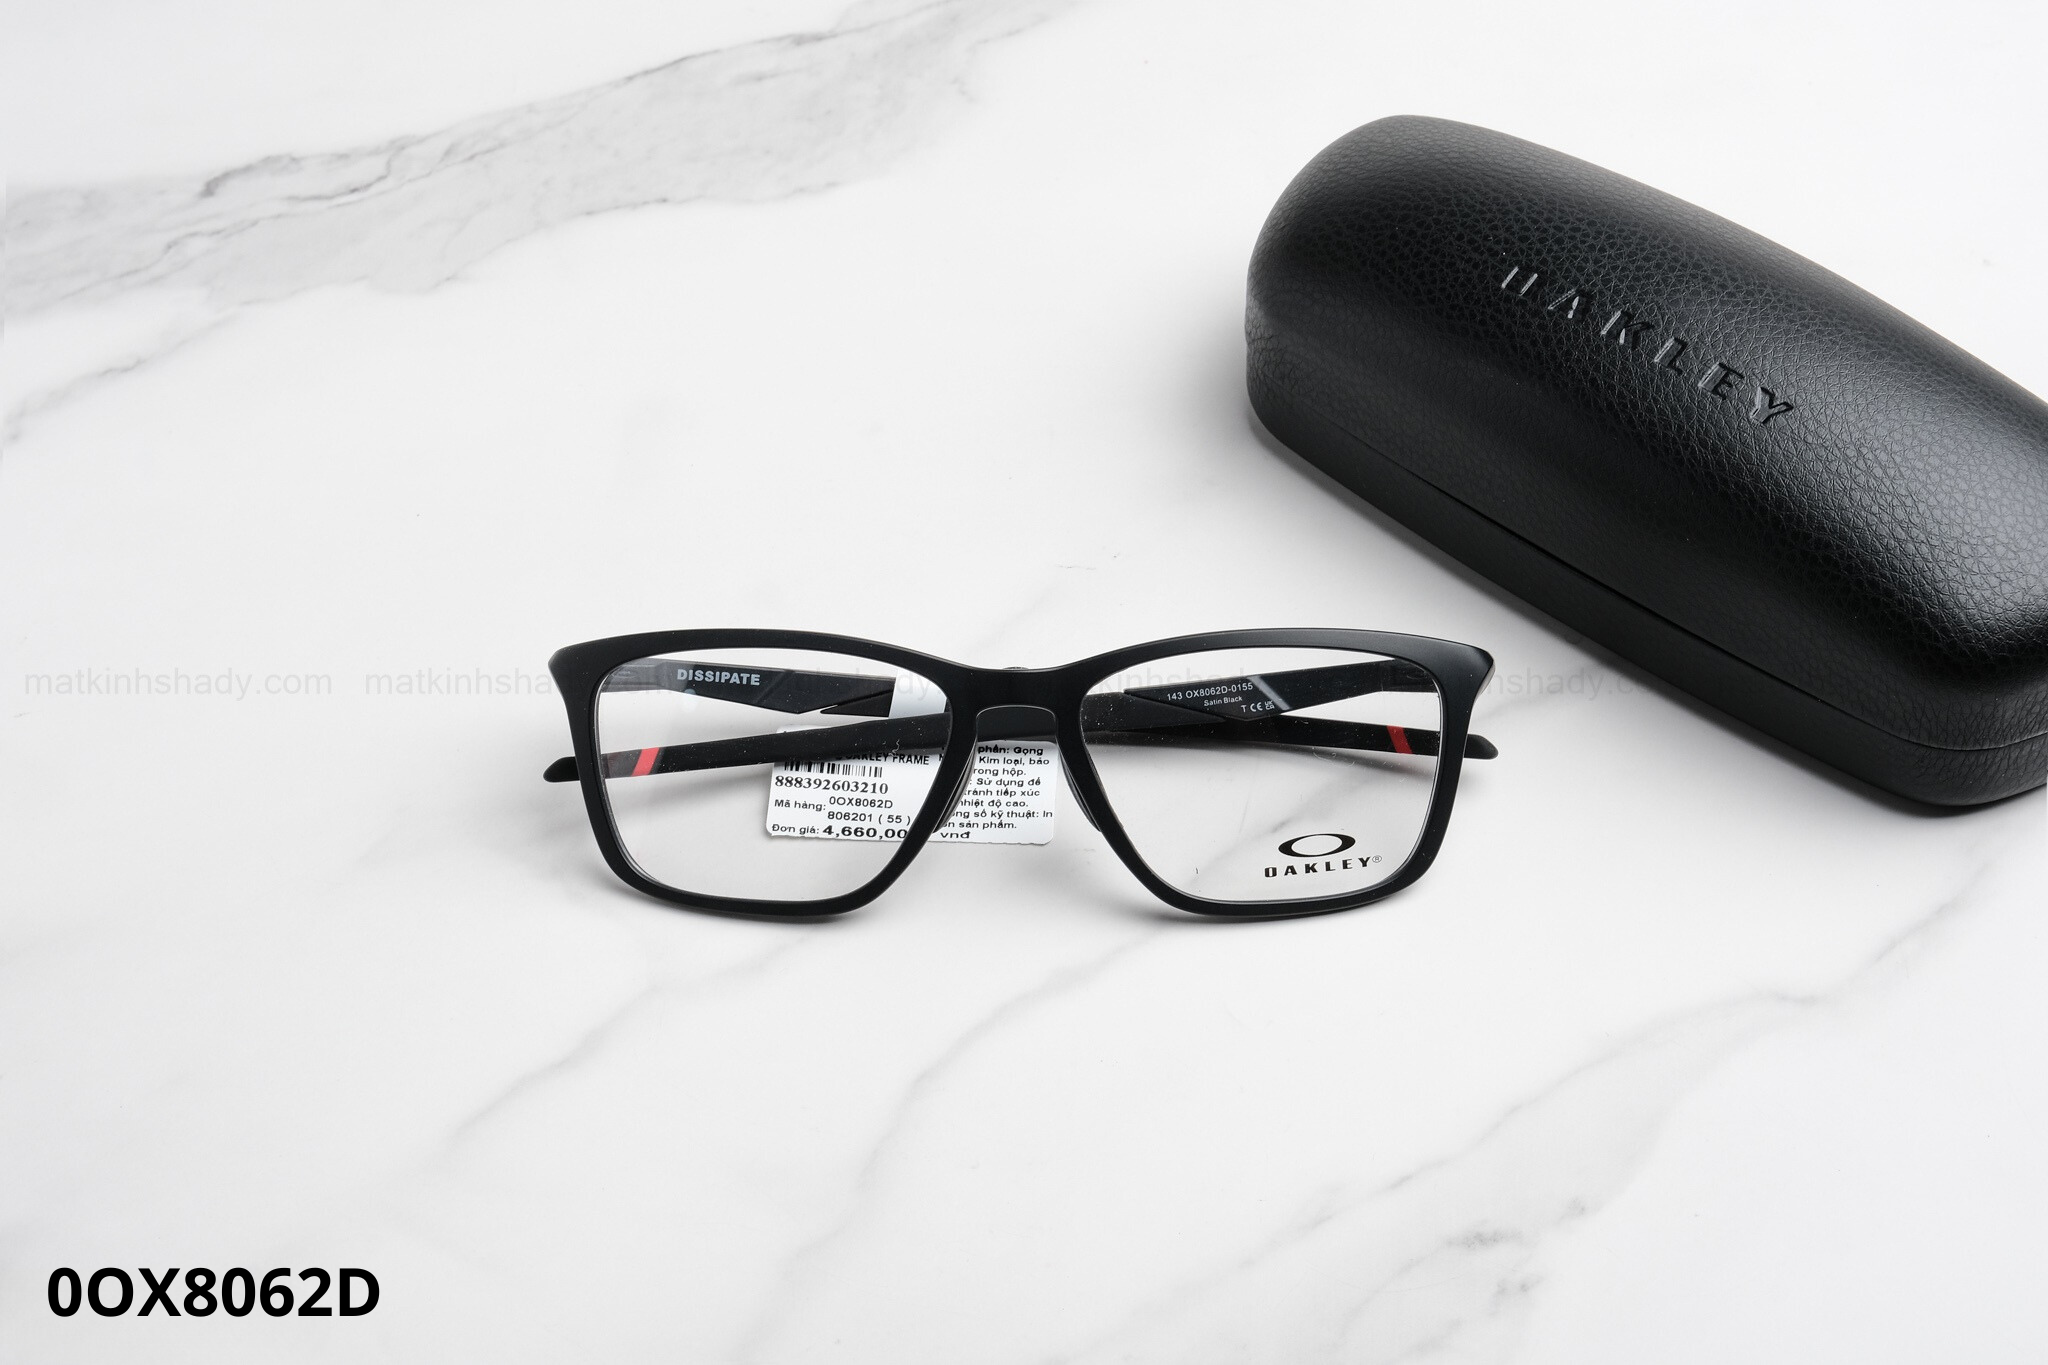  Oakley Eyewear - Glasses - 0OX8062 